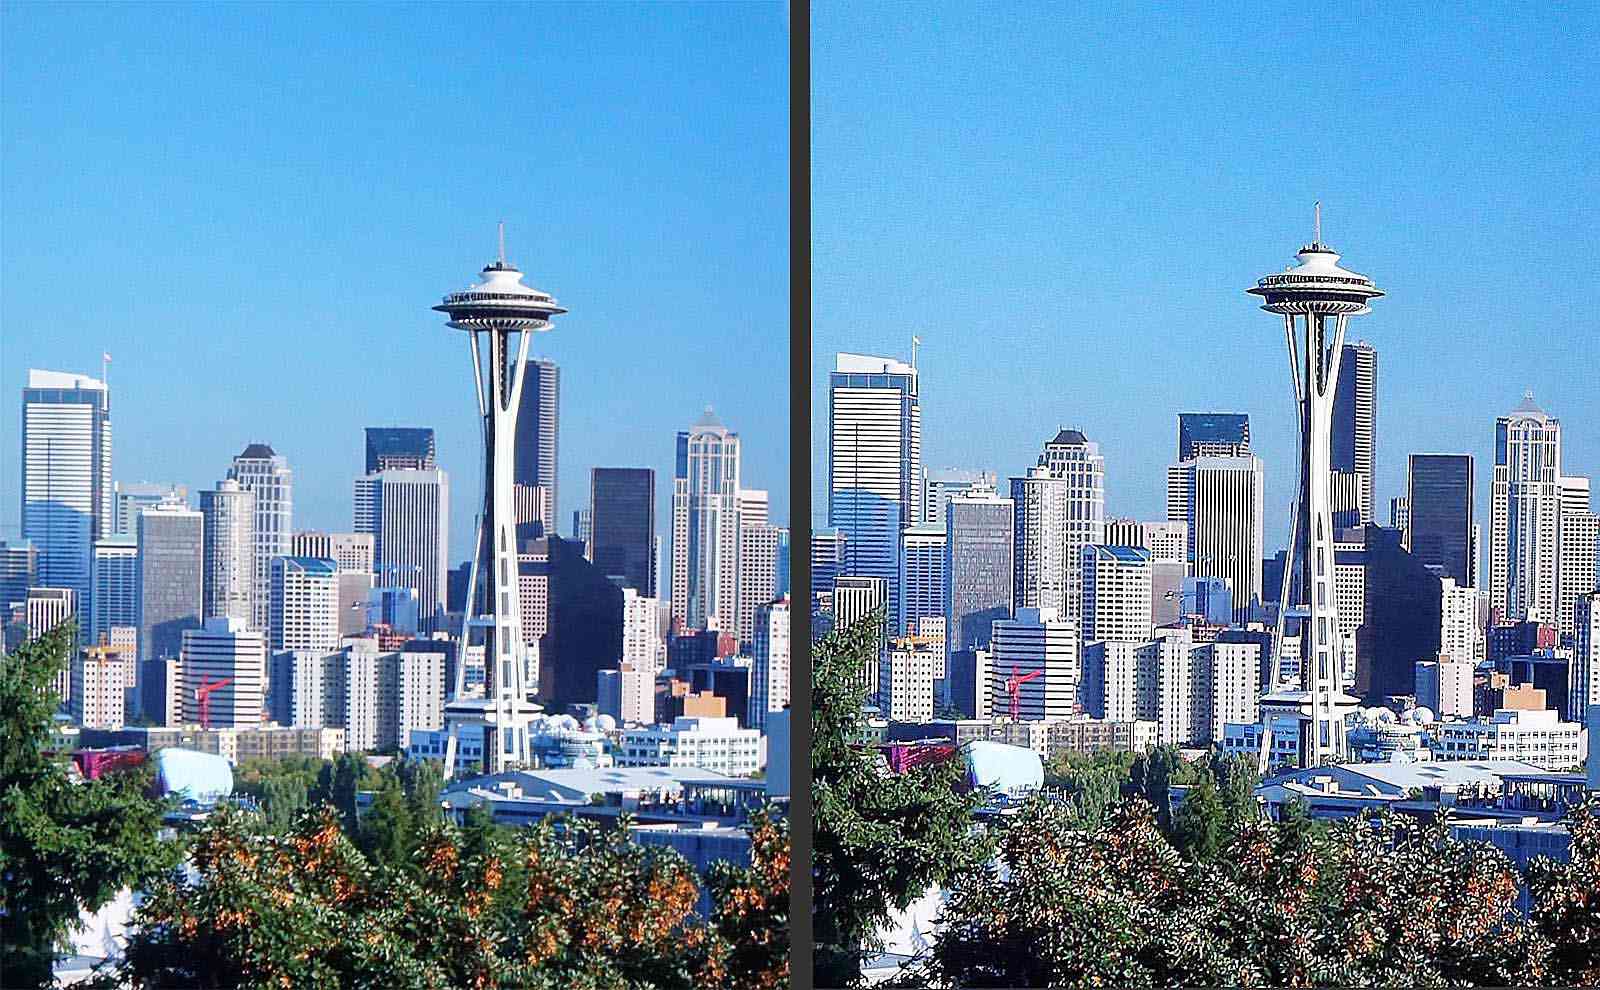 Seattle Skyline - Normal vs Sharp